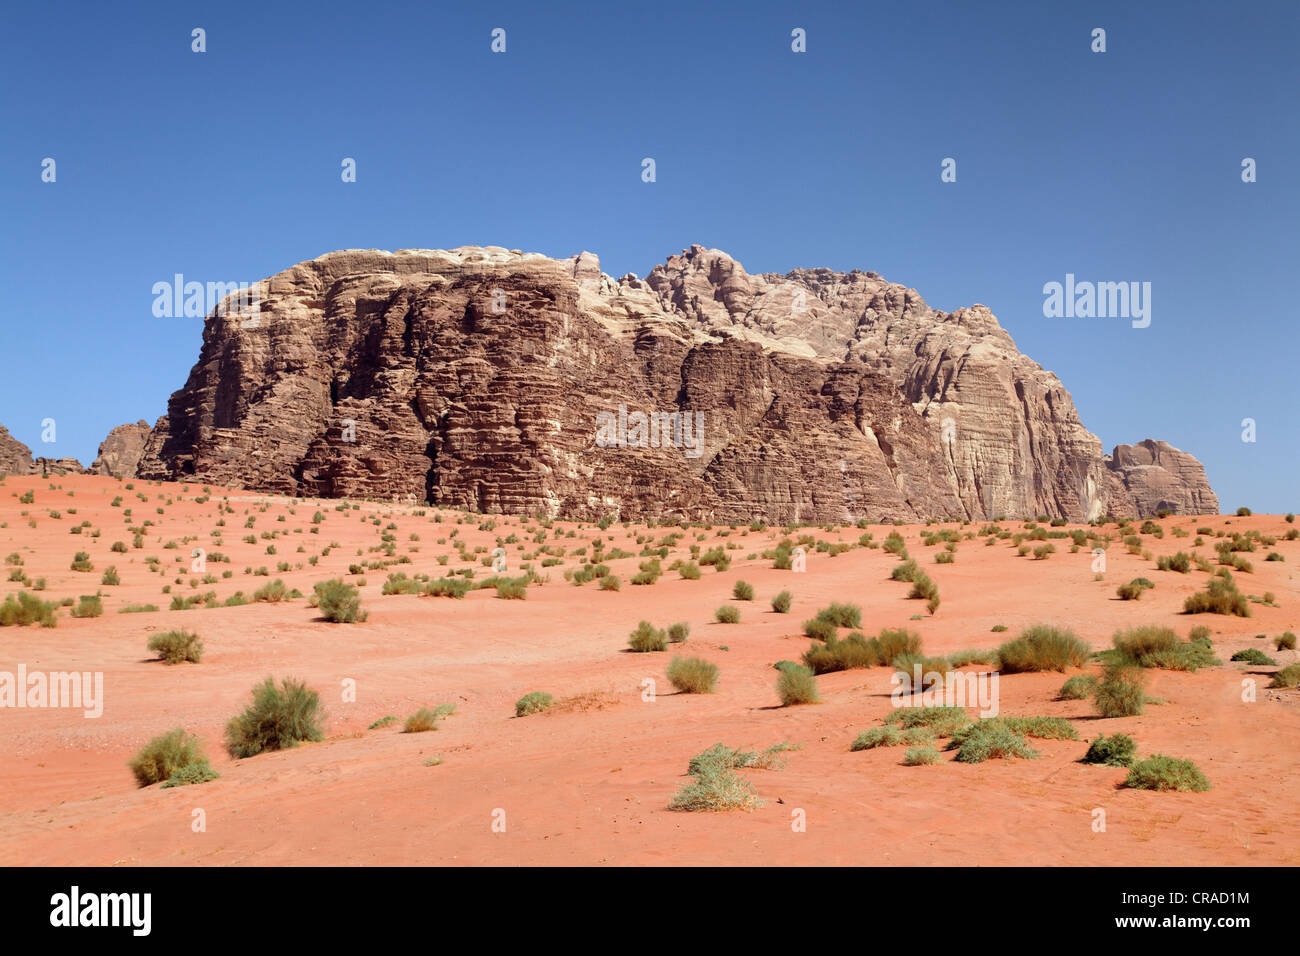 Montagnes, vastes plaines et les arbustes du désert, Wadi Rum, Royaume hachémite de Jordanie, Moyen-Orient, Asie Banque D'Images